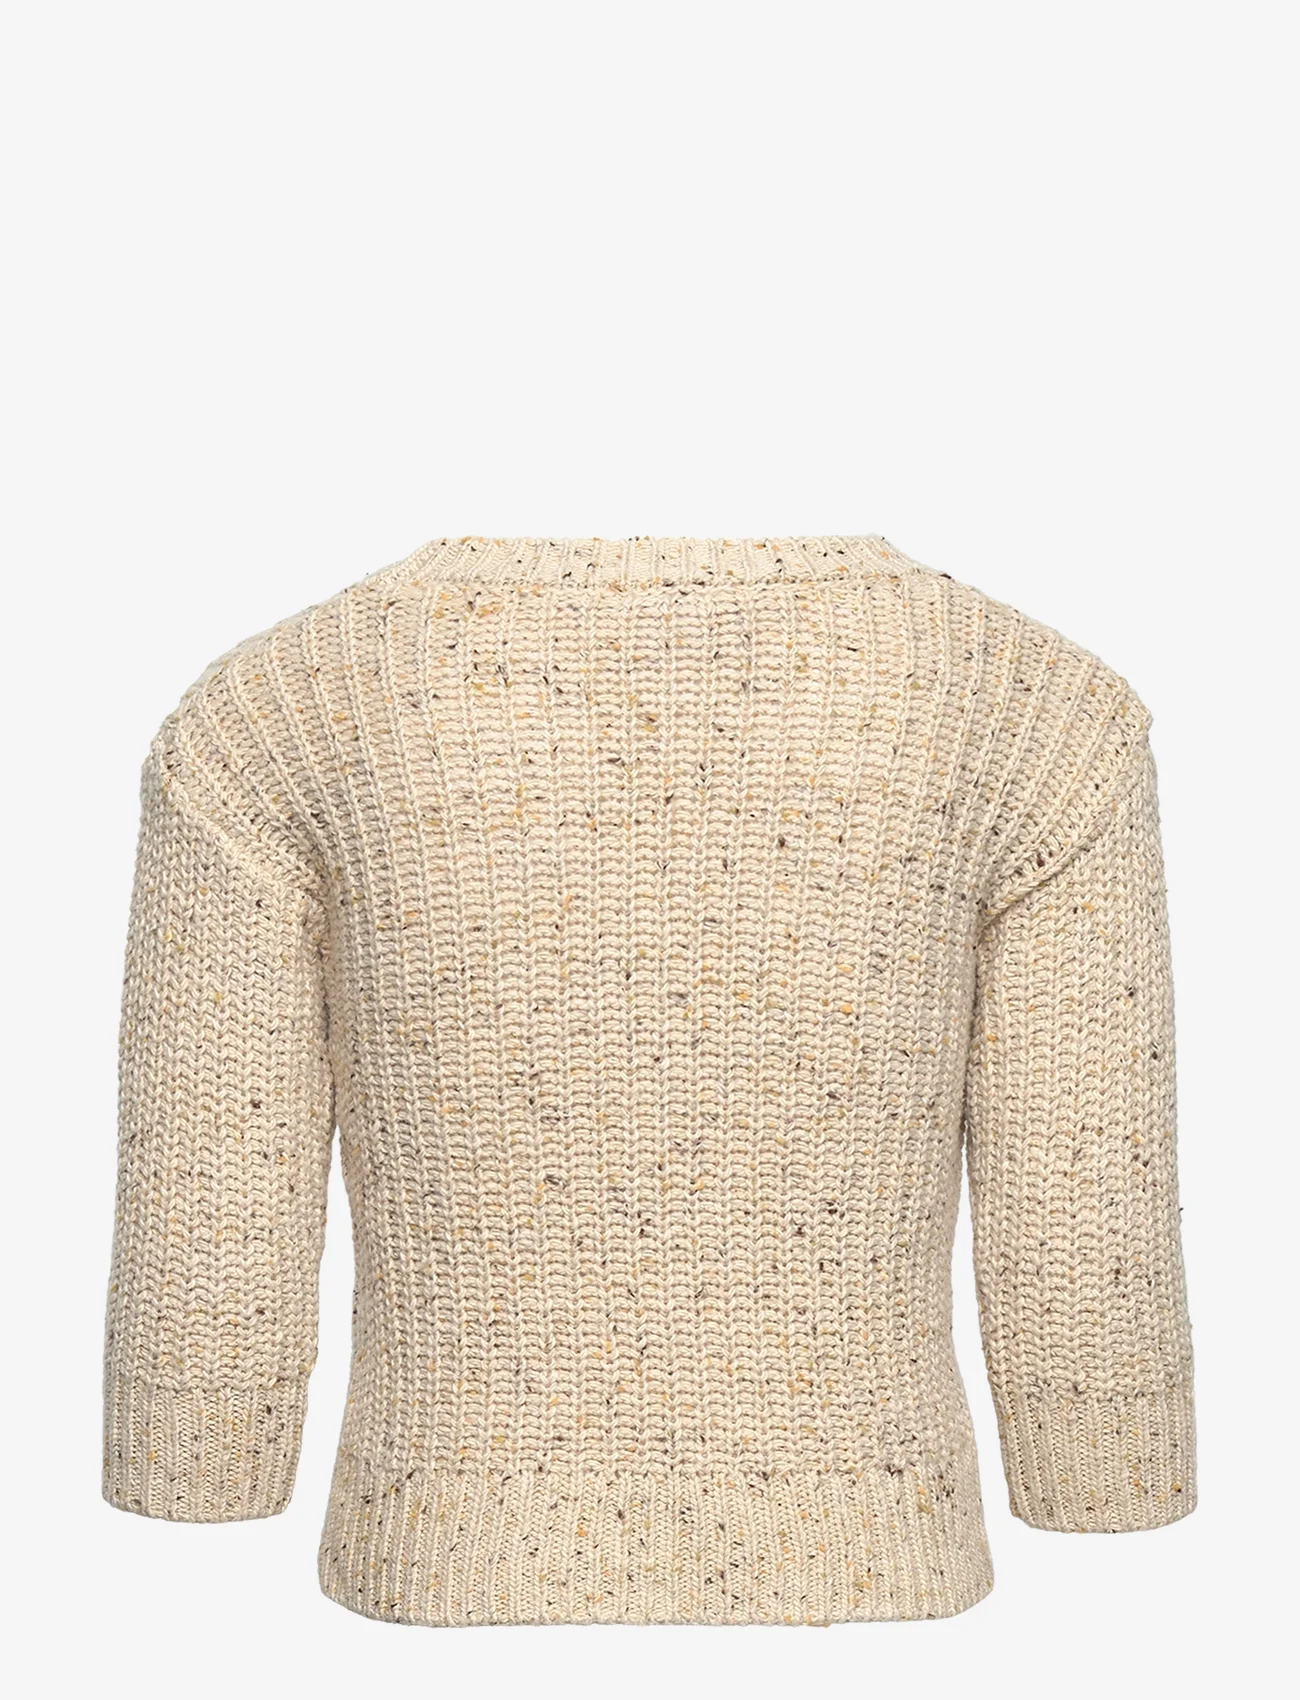 Lindex - Sweater knitted melange - pullover - light beige - 1